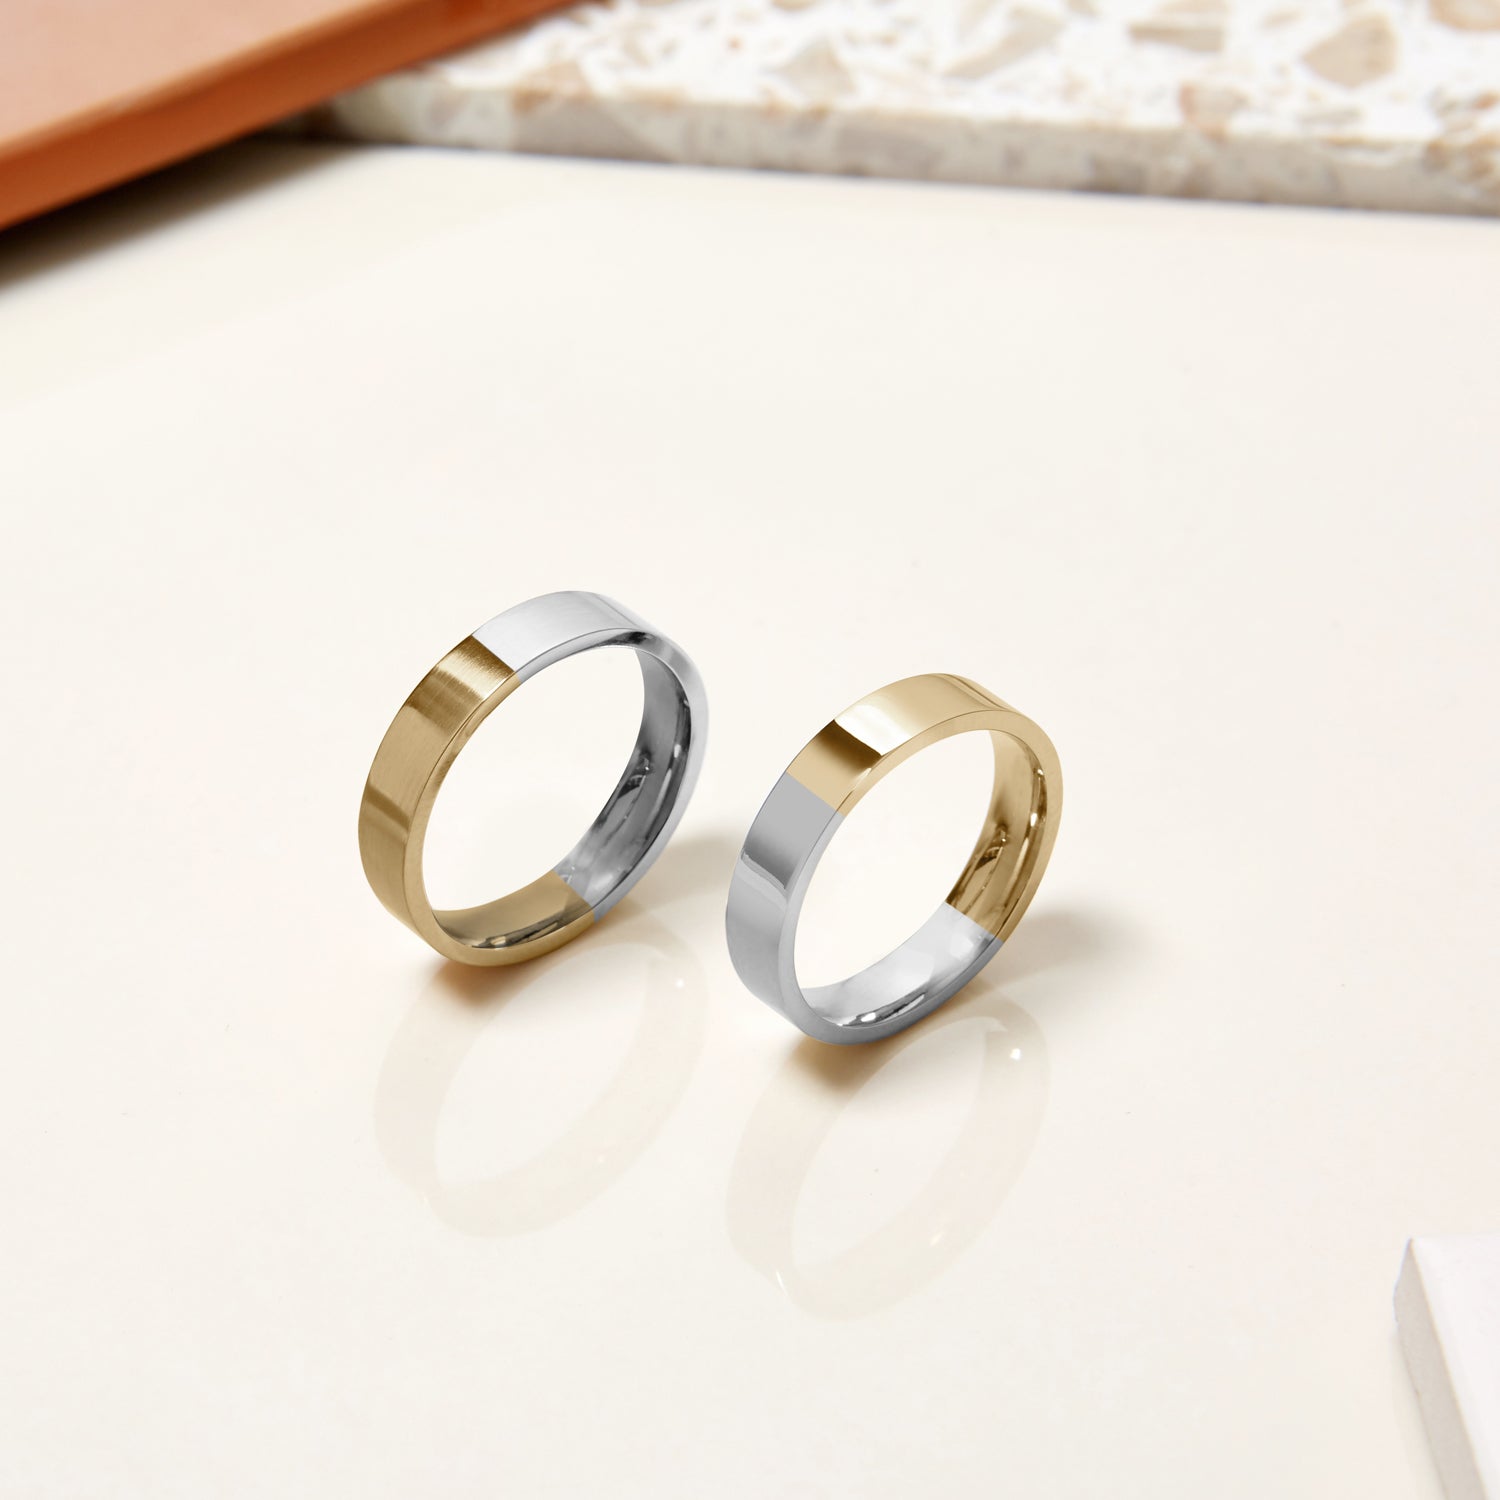 Handmade Ethical Gold Wedding Rings